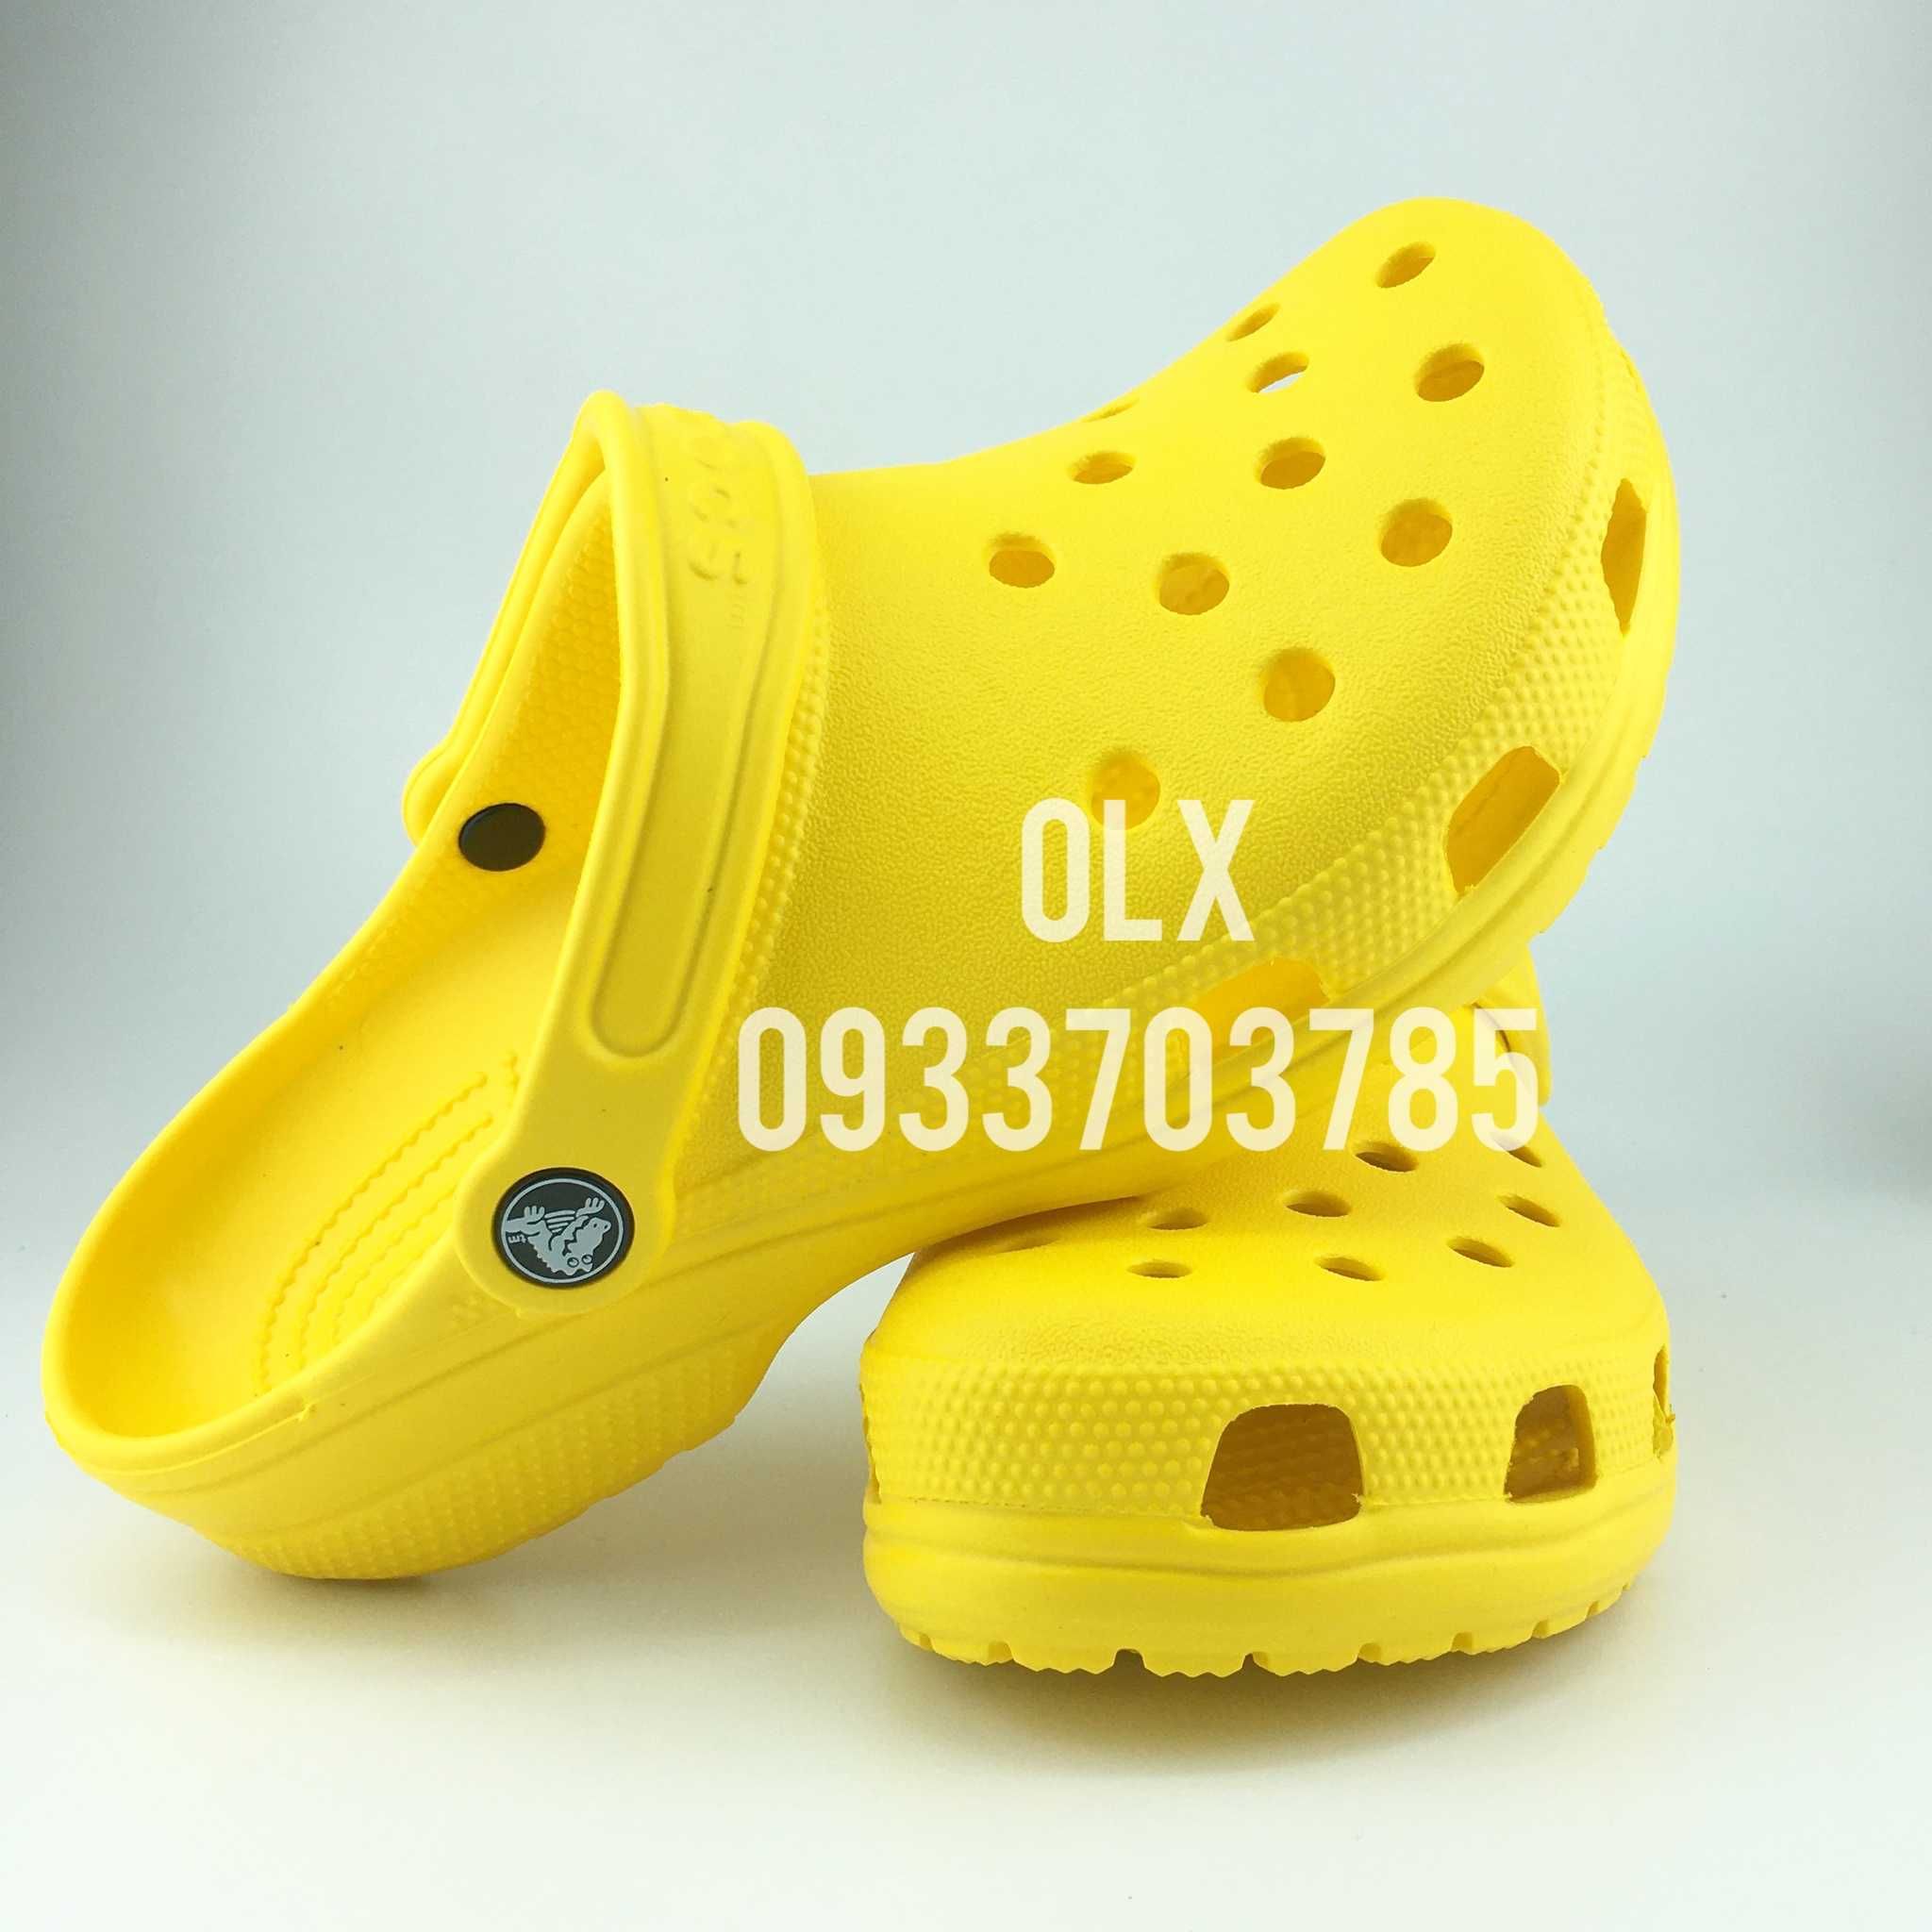 Original Crocs Classic Yellow оригінальні крокс жіночі жовті з знижкою